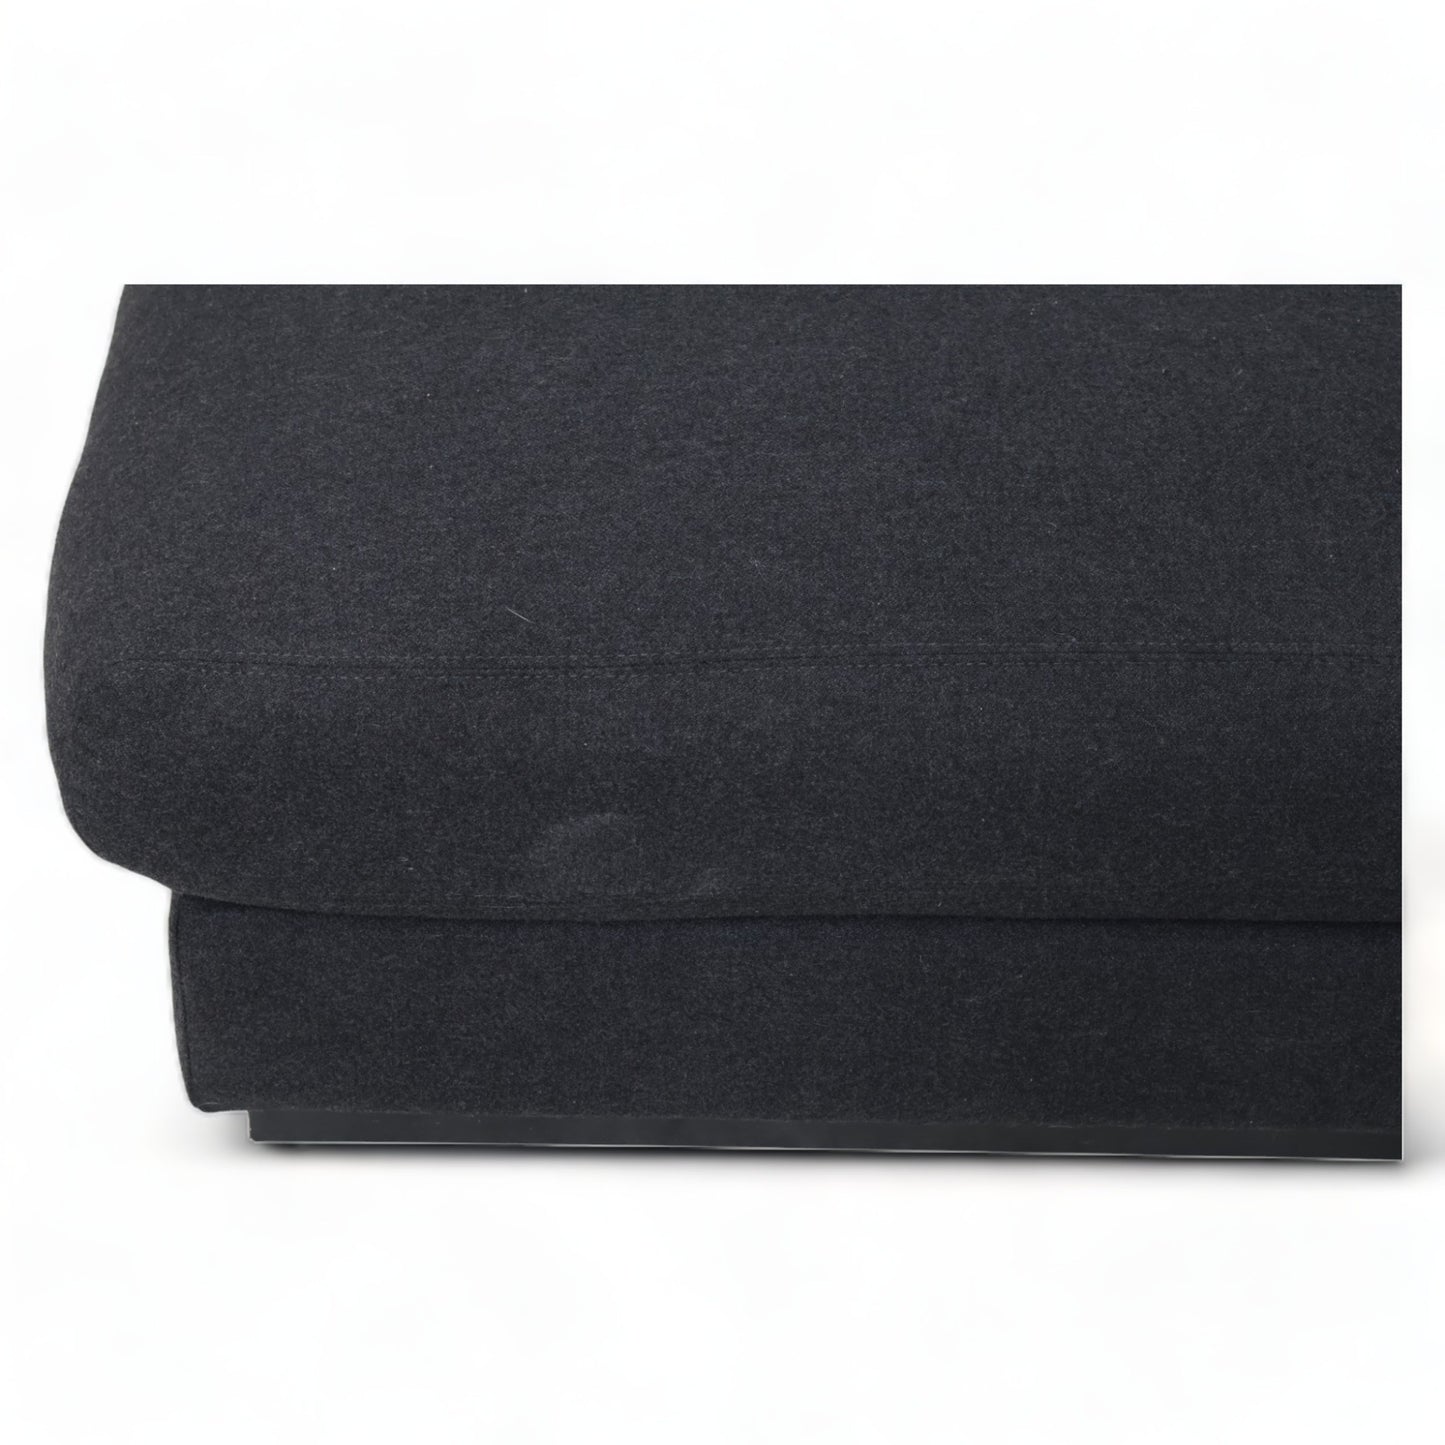 Nyrenset | Sort Bolia Sepia sofa med sjeselong